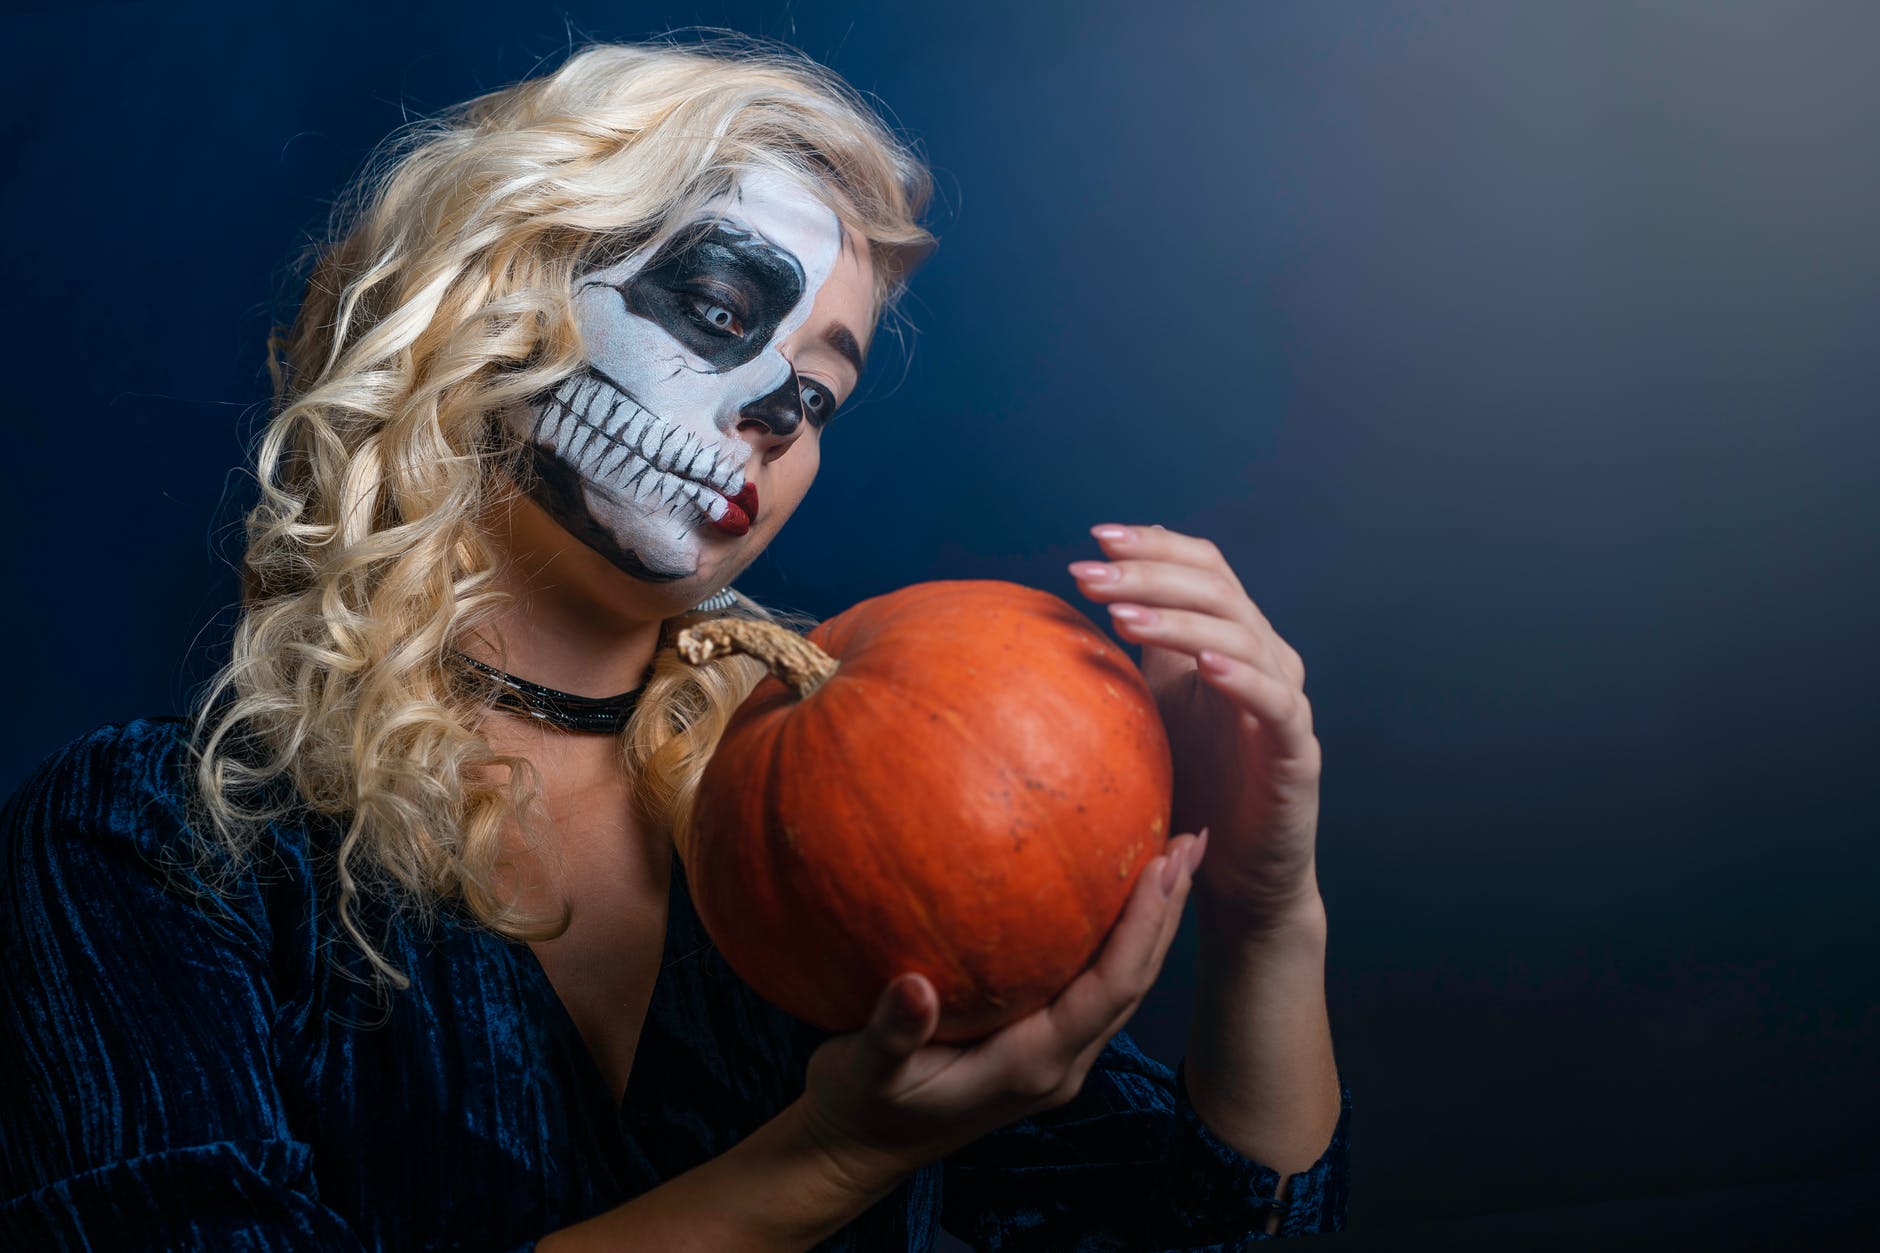 10 idees originales pour feter Halloween 2021 a la maison en toute securite 5 10 idées originales pour fêter Halloween 2021 à la maison en toute sécurité